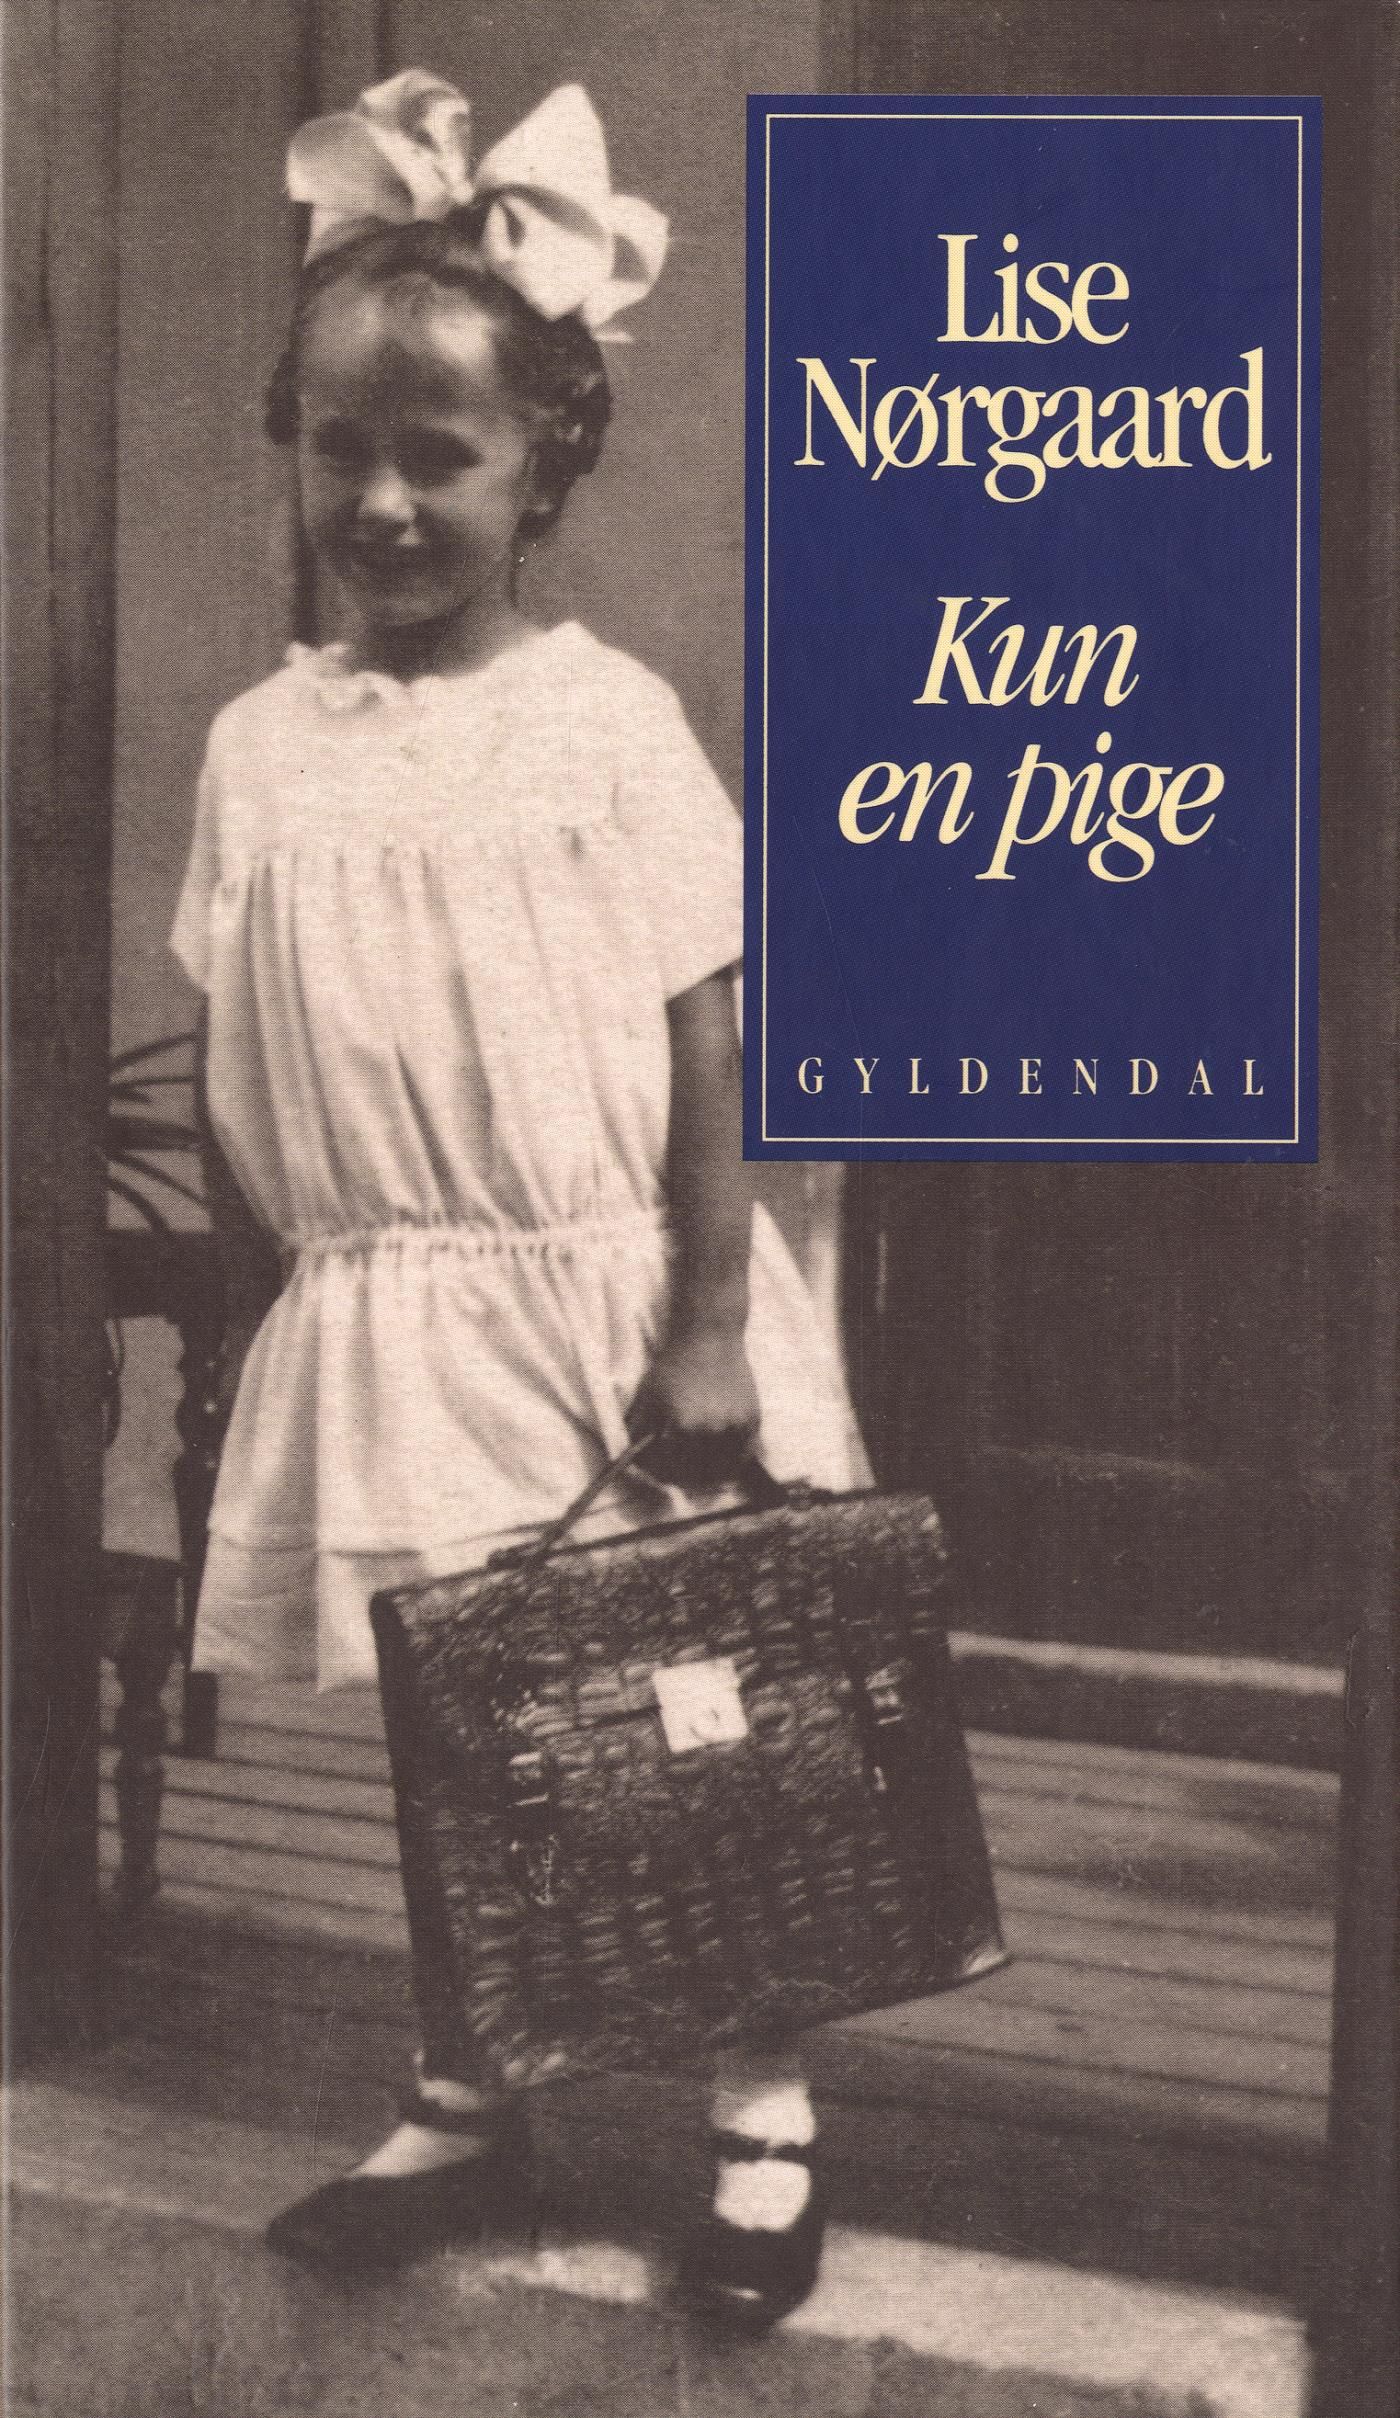 Kun en pige, eBook by Lise Nørgaard